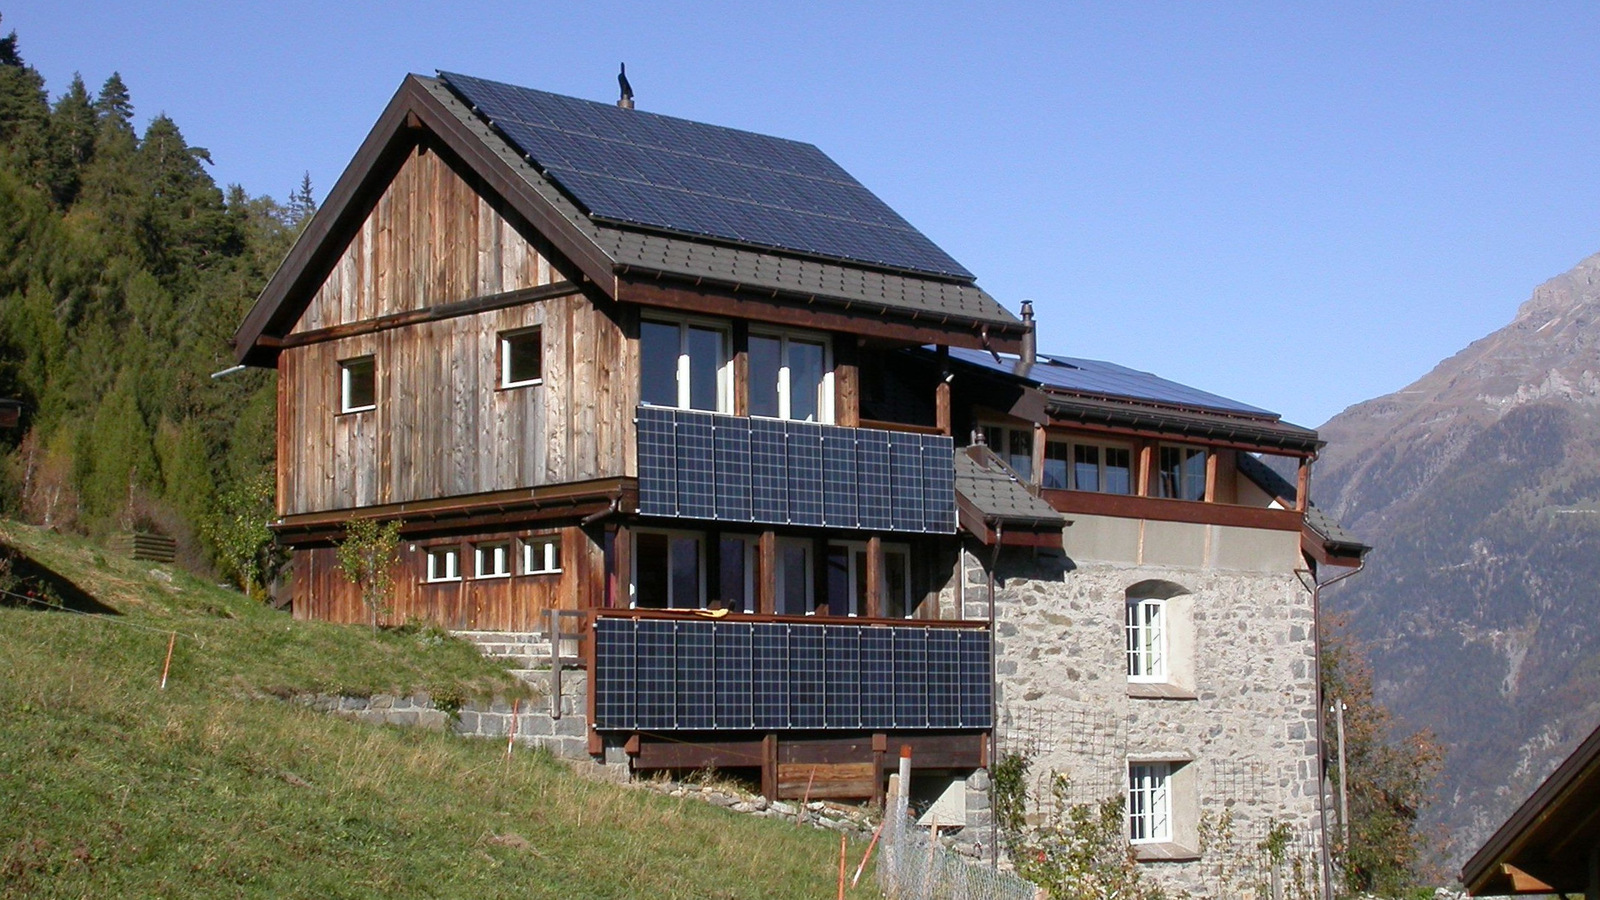 Schweiz führt allgemeine Solarpflicht ein – und vereinfacht Regelungen für Ökostromanlagen